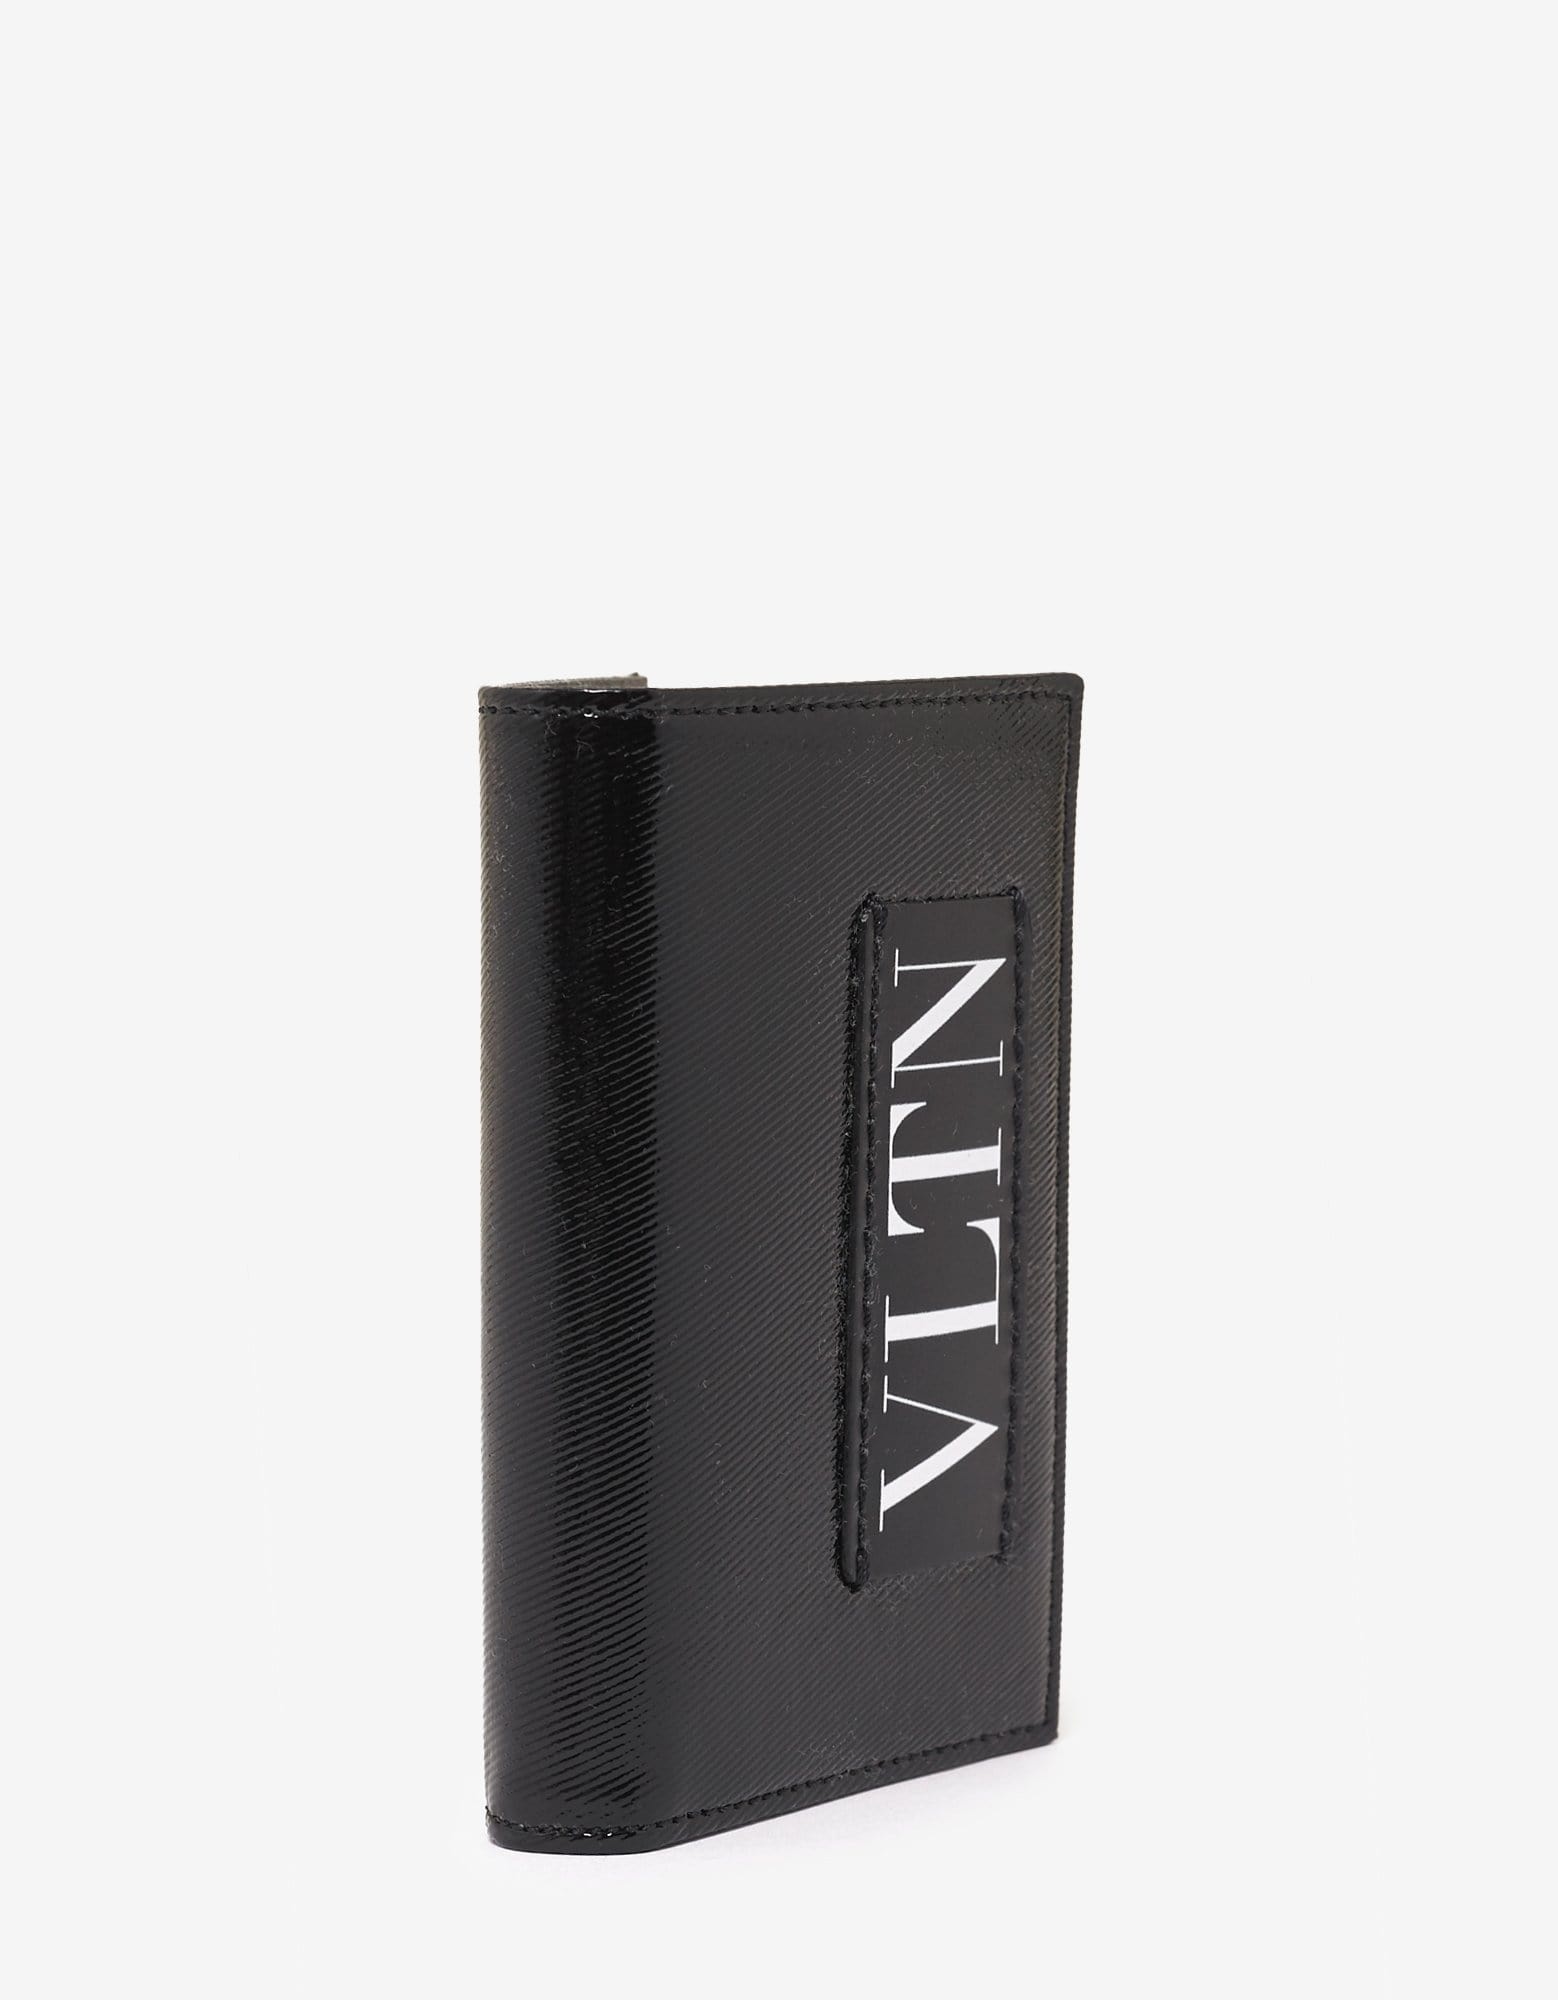 Black Patent Leather VLTN Card Wallet - 2